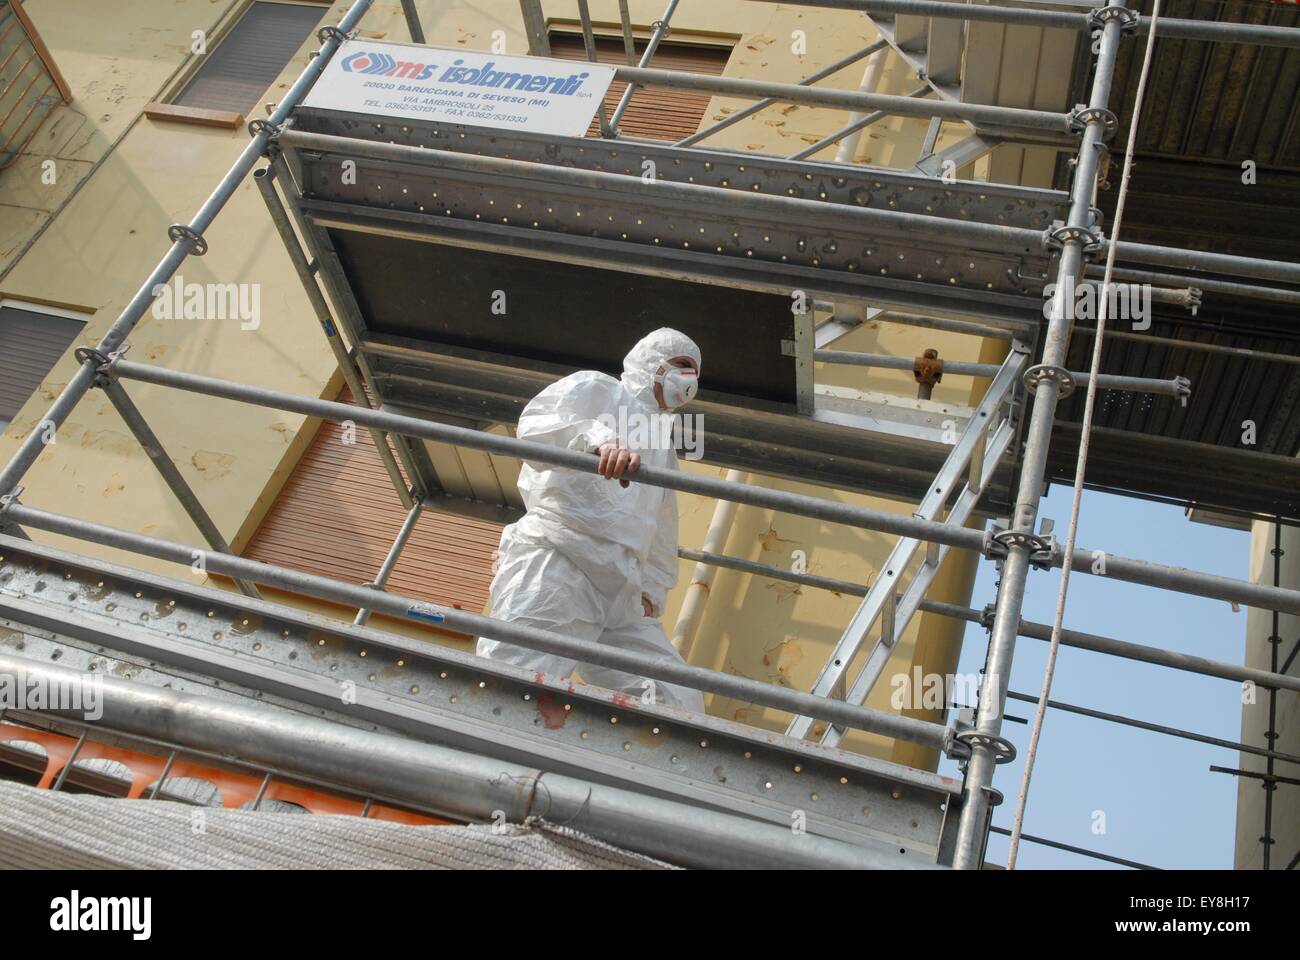 Casale Monferrato (Italien) Entfernung von Asbeststaub verwendet als Isoliermaterial in der Decke eines Palastes Stockfoto